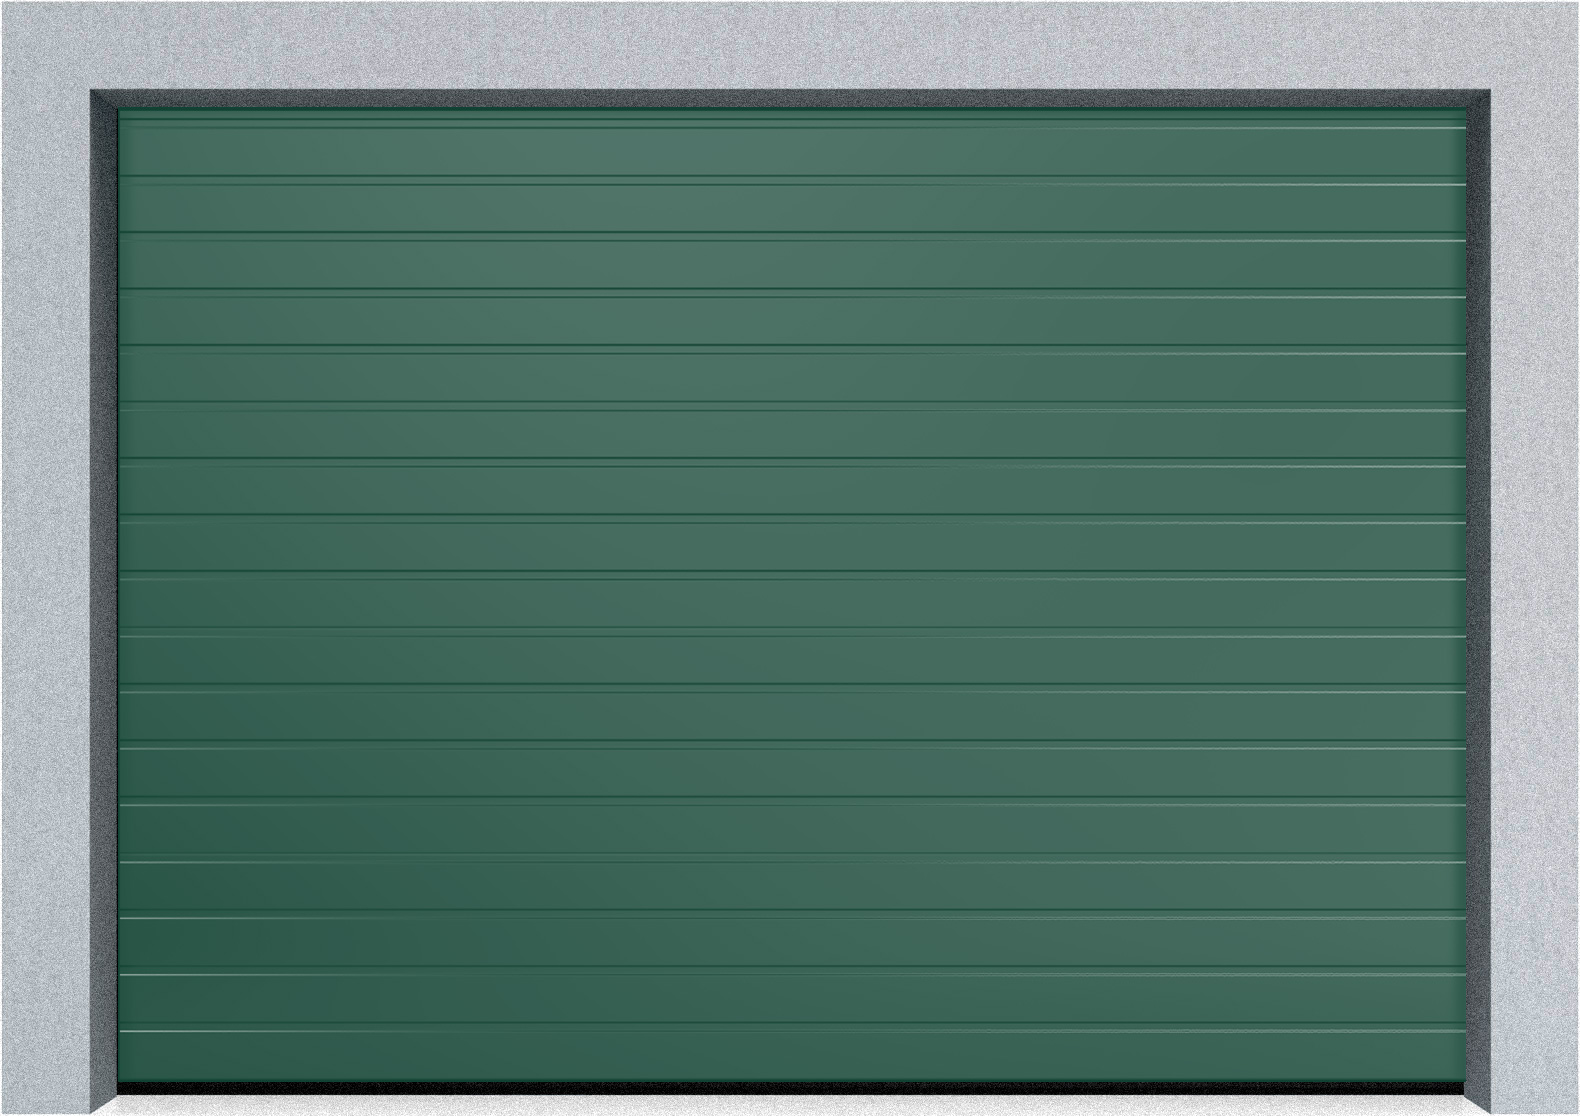  Автоматические Секционные гаражные ворота Hormann LTE 42 2500х2750 S-гофр, Микроволна стандартные цвета, фото 3 